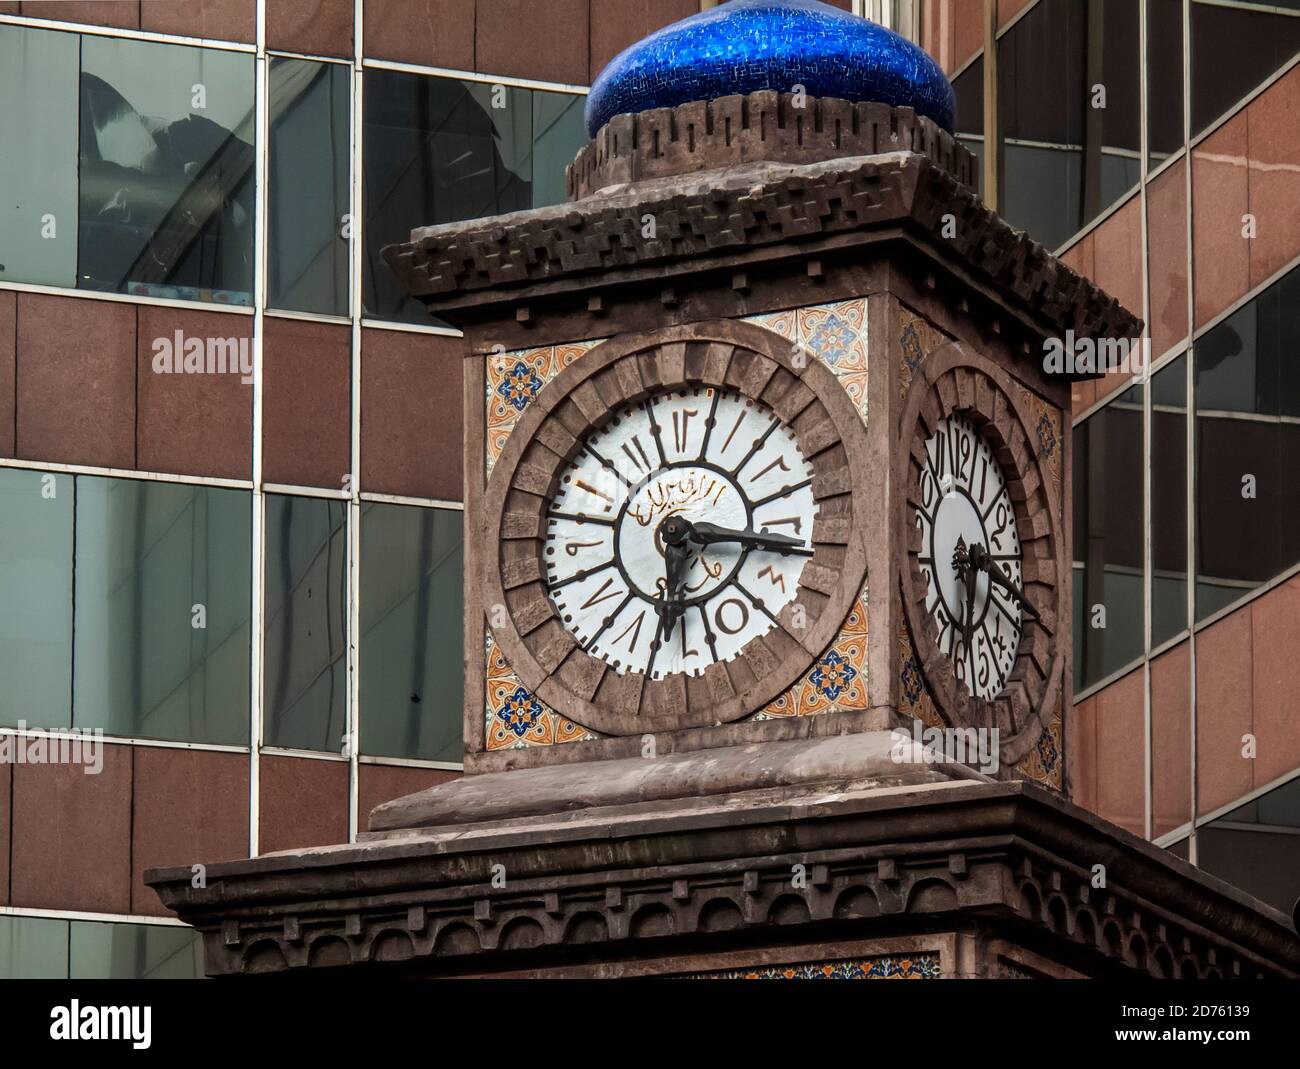 Uhr mit arabischen Ziffern Stockfoto